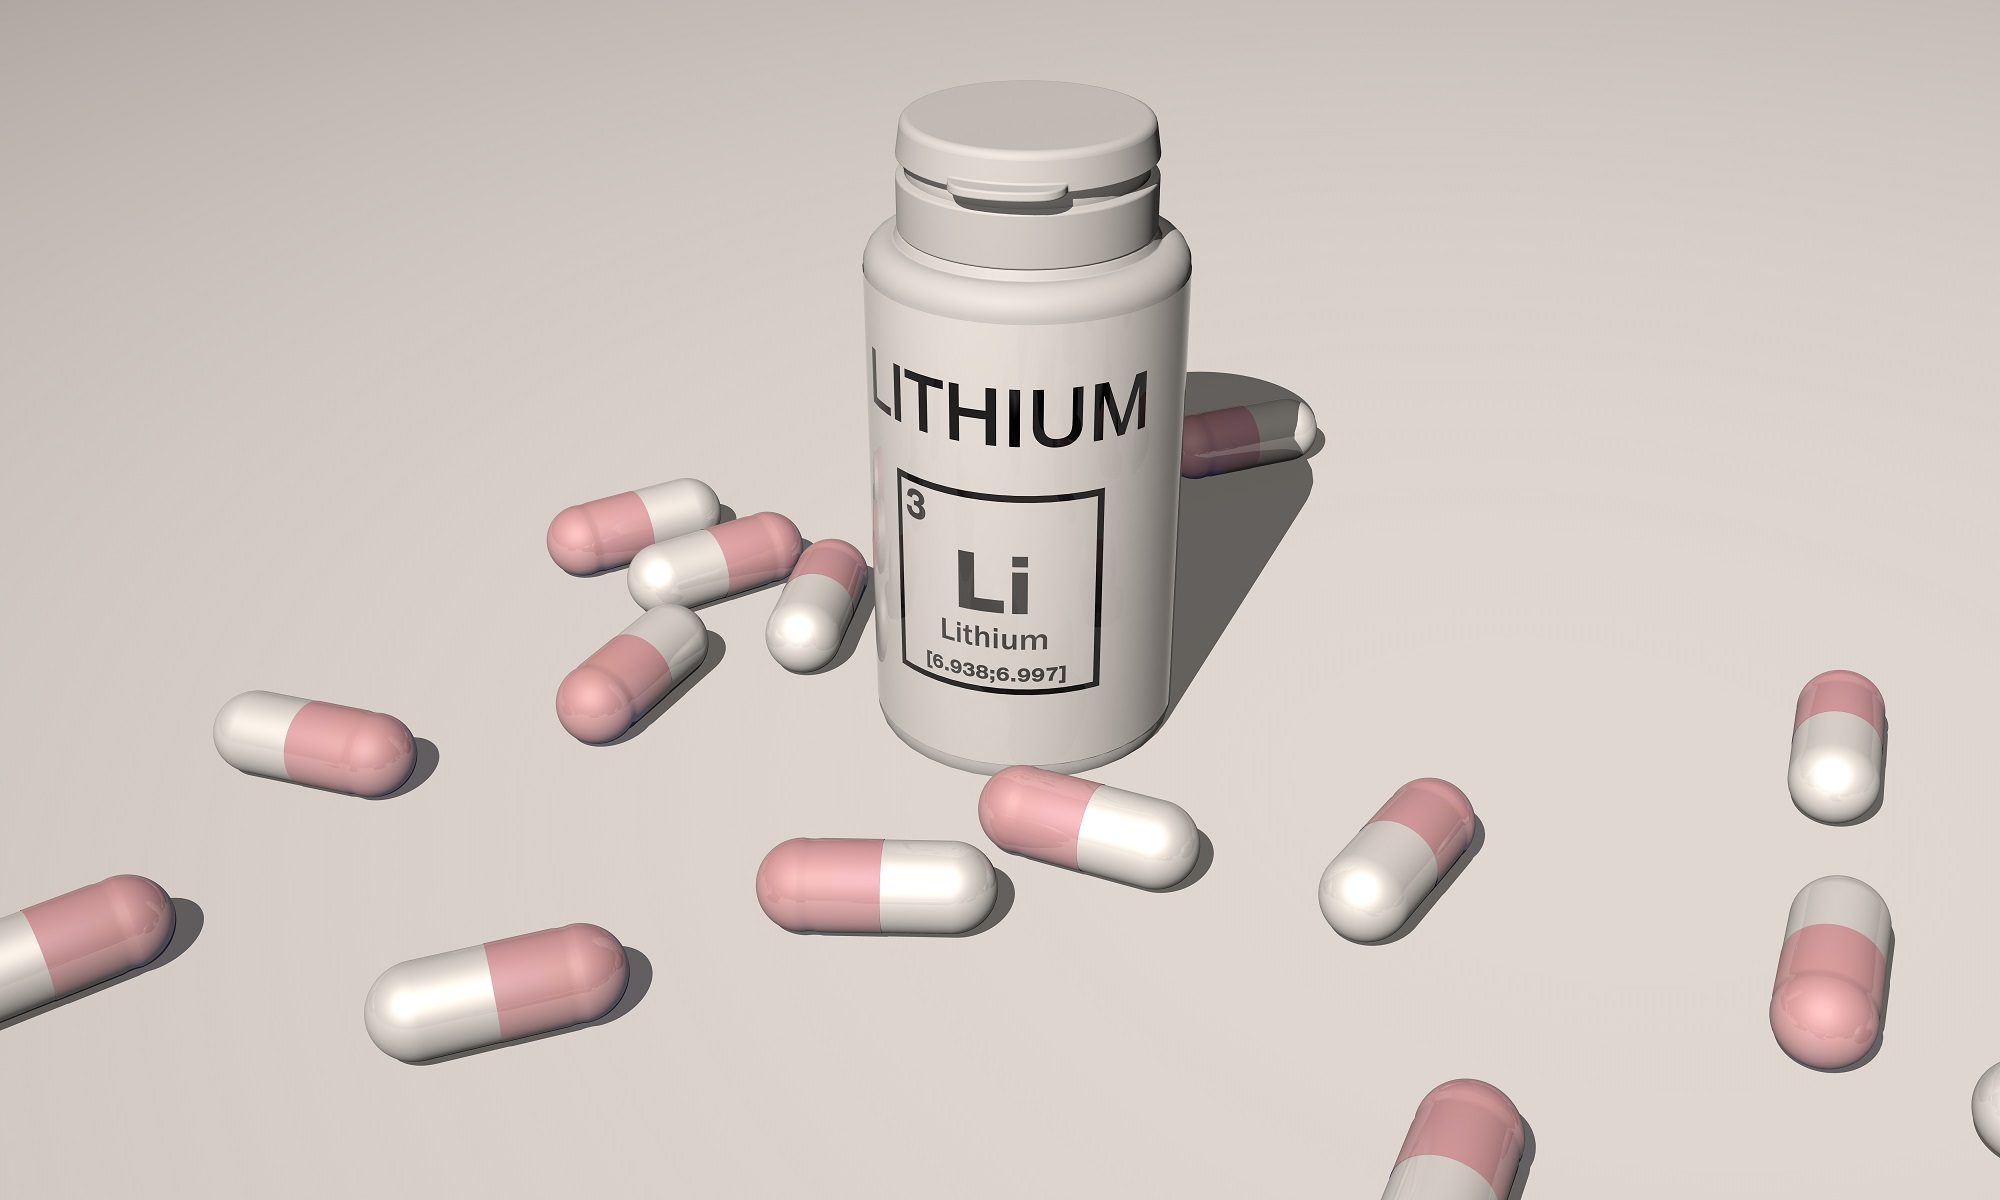 Trajtimi me litium mund të ulë rrezikun e zhvillimit të demencës, thotë studimi